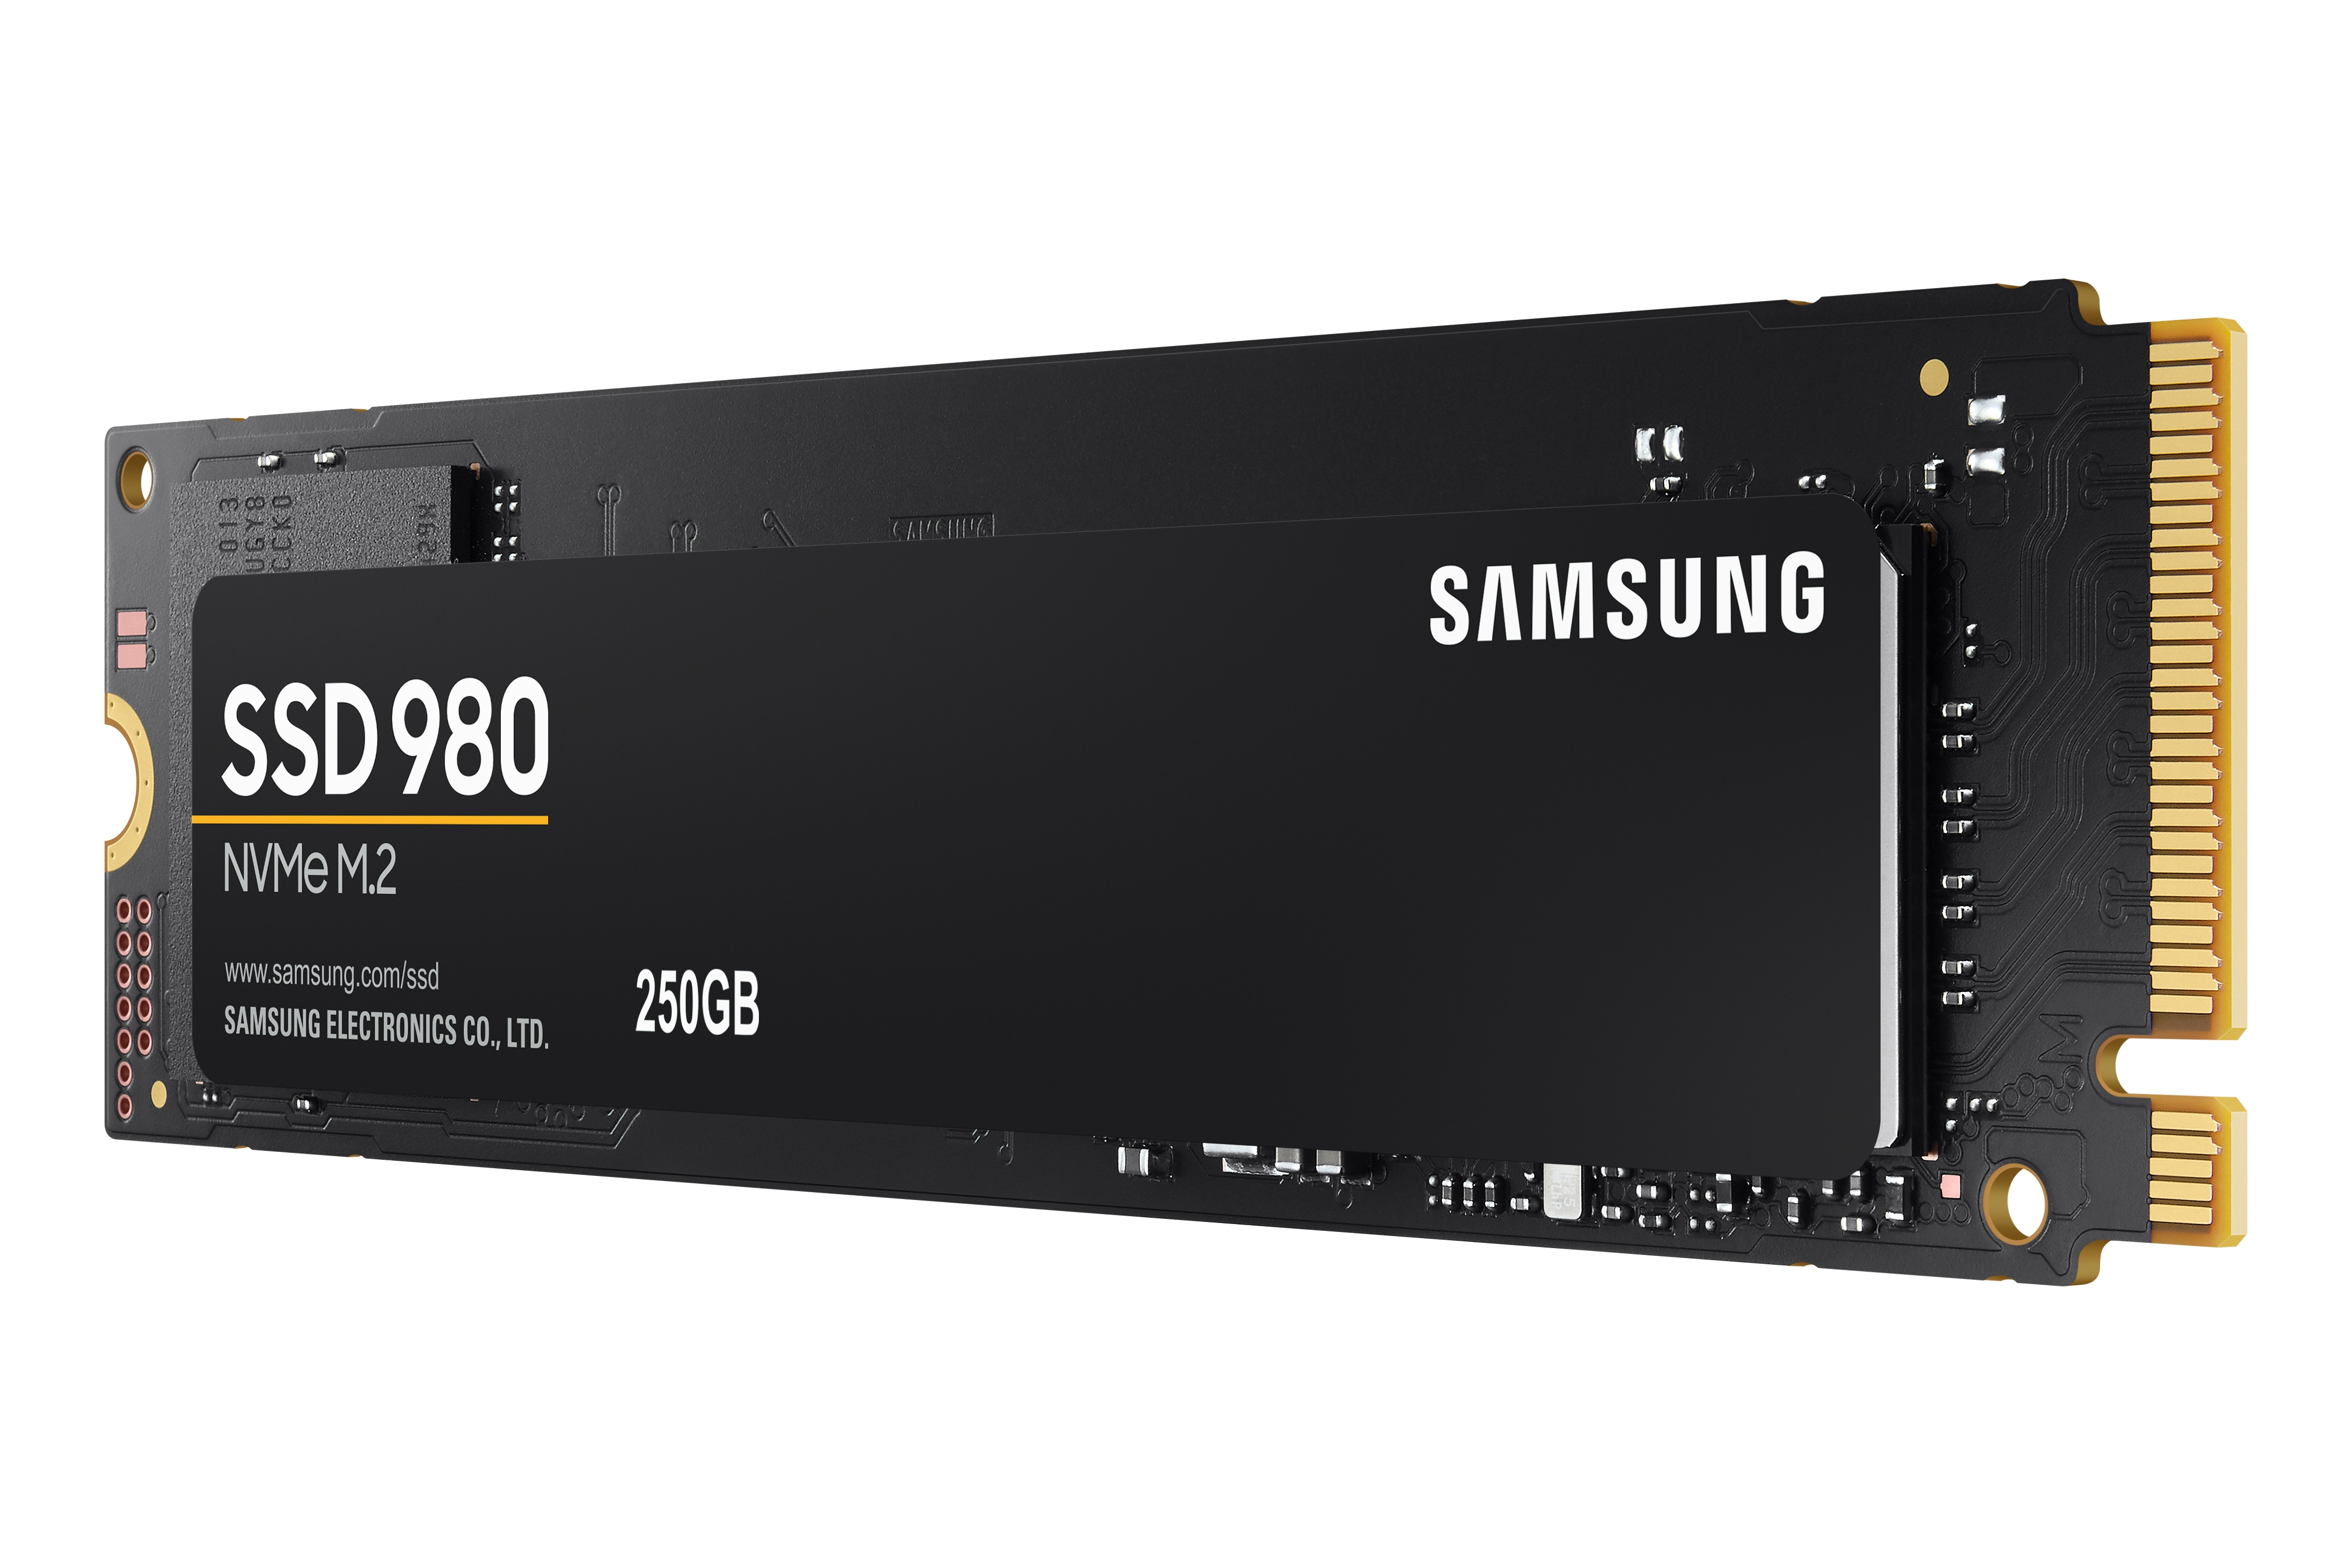 SAMSUNG SSD 980 NVMe M.2 2280 250GB 500GB 1TB PCIe 3.0 x4 1.4 V-NAND MLC  LOT